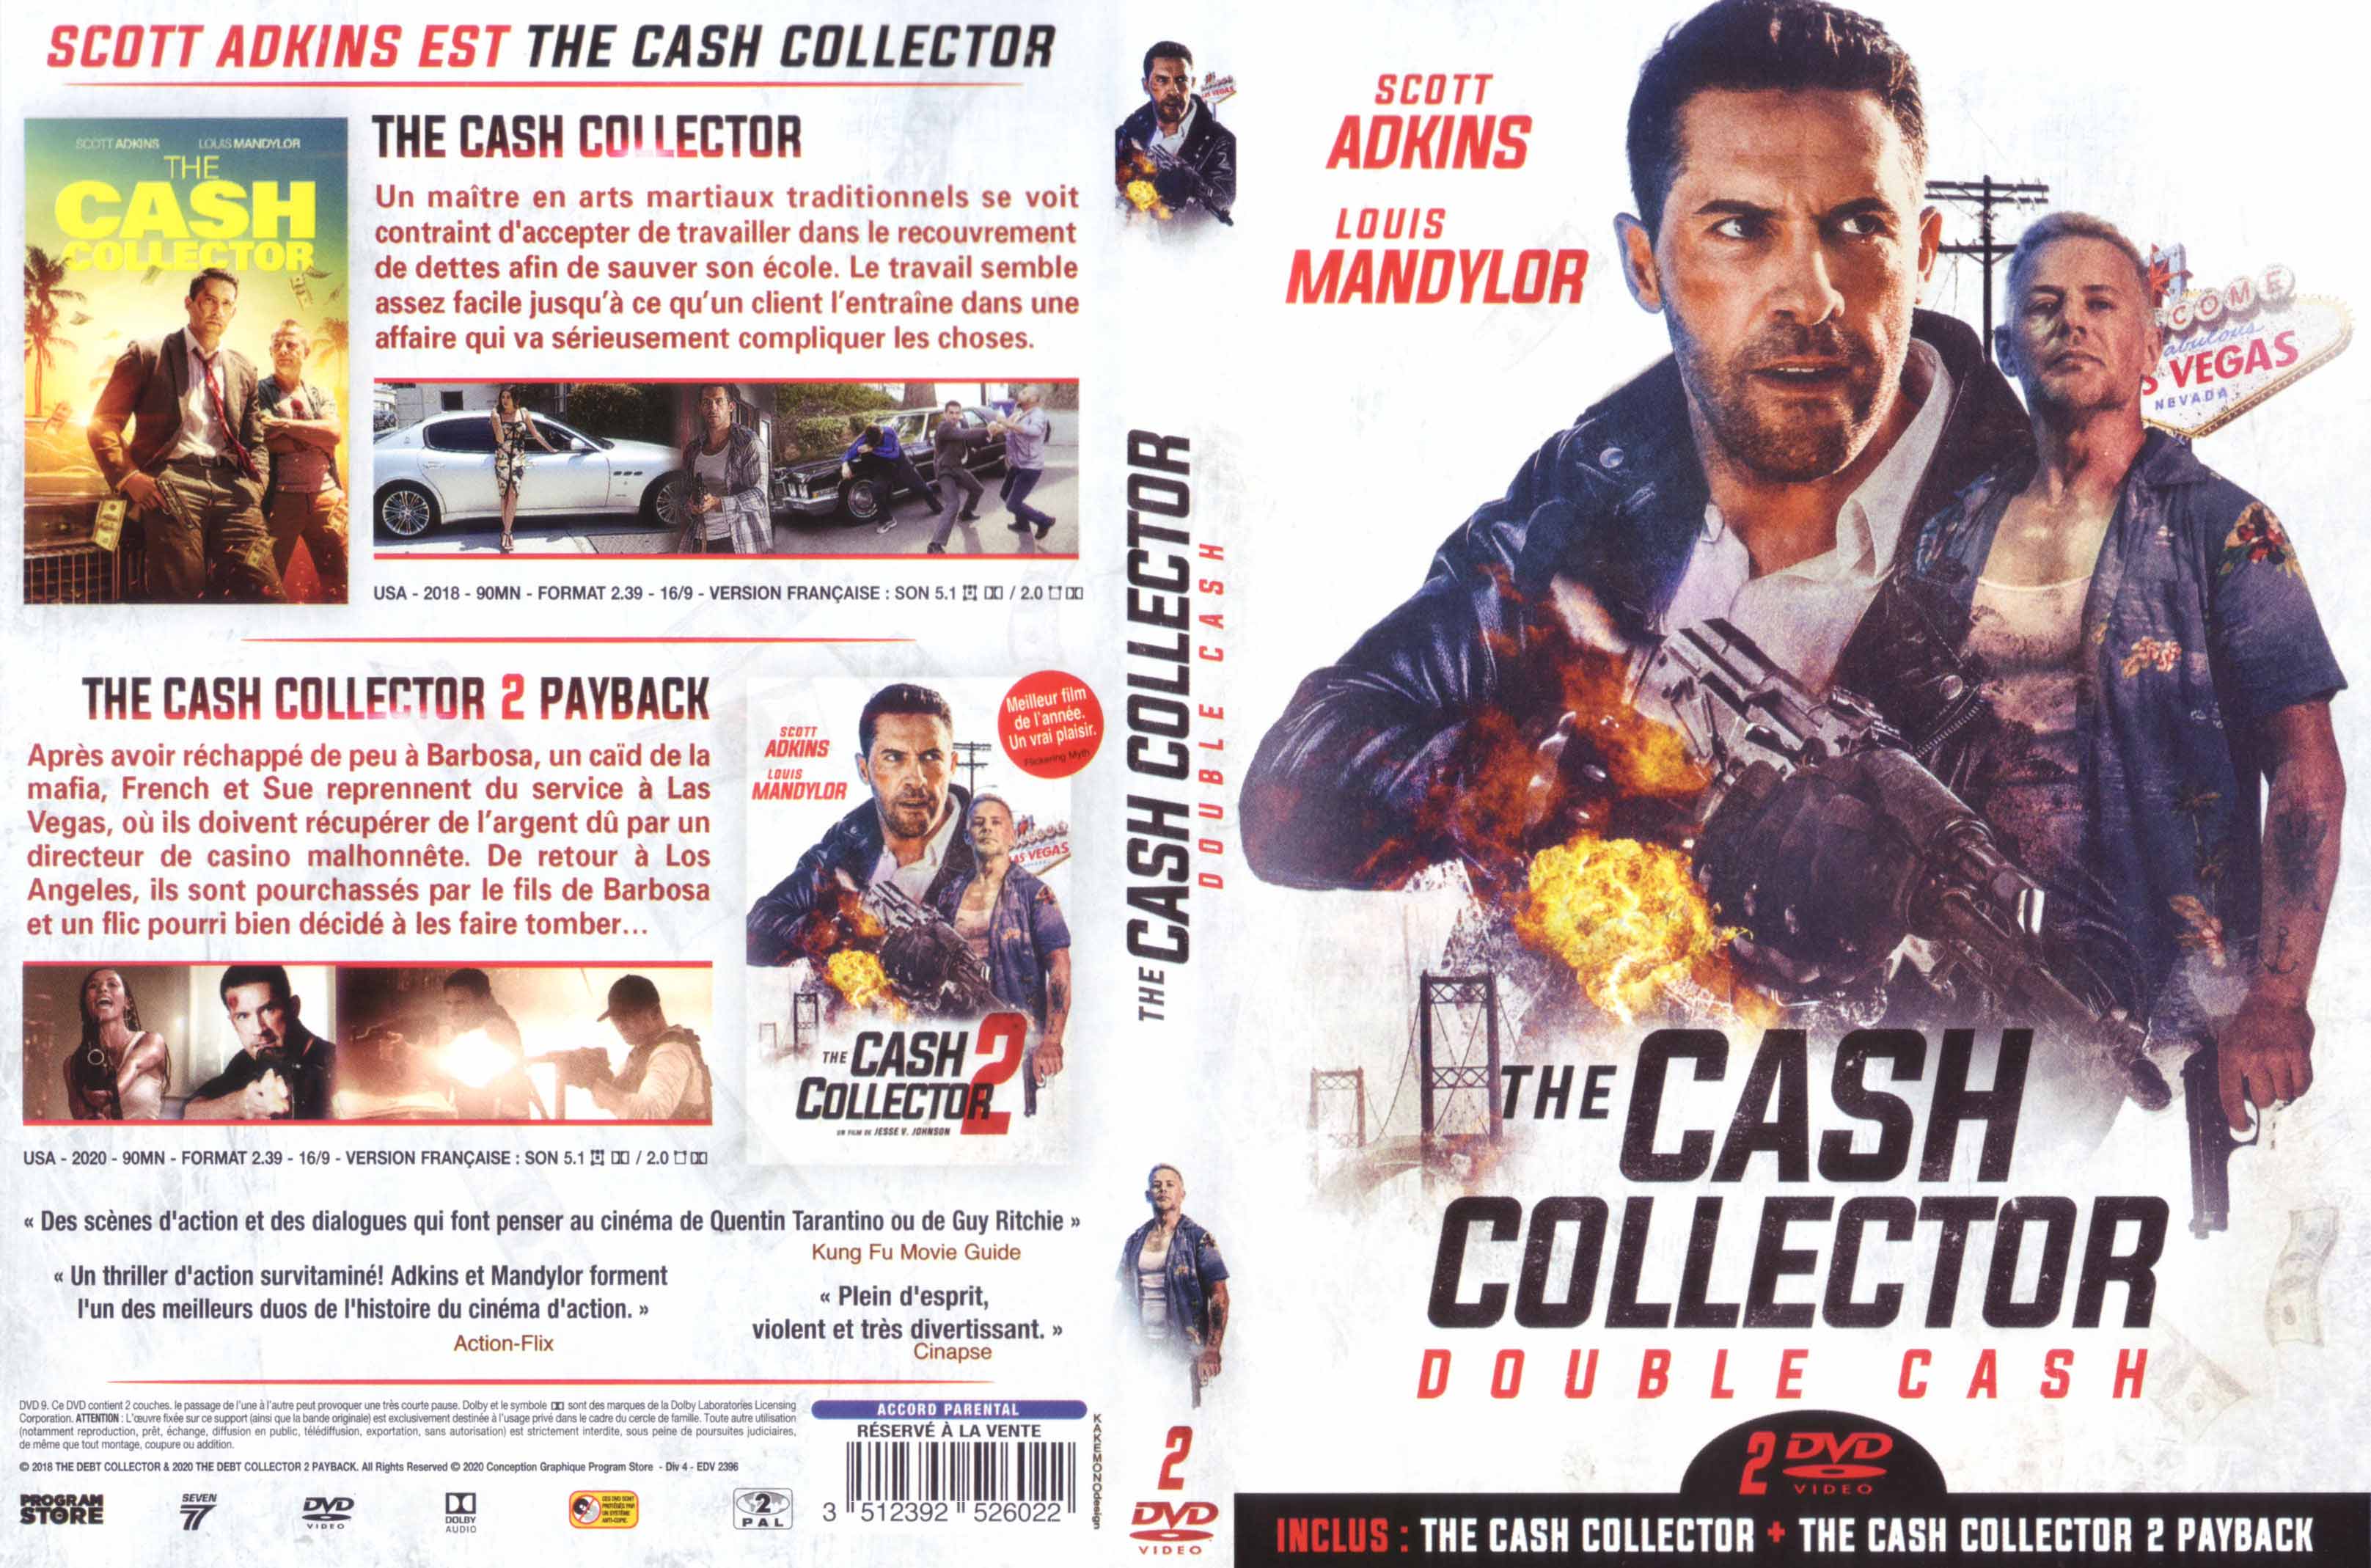 Jaquette DVD The cash collector Double cash